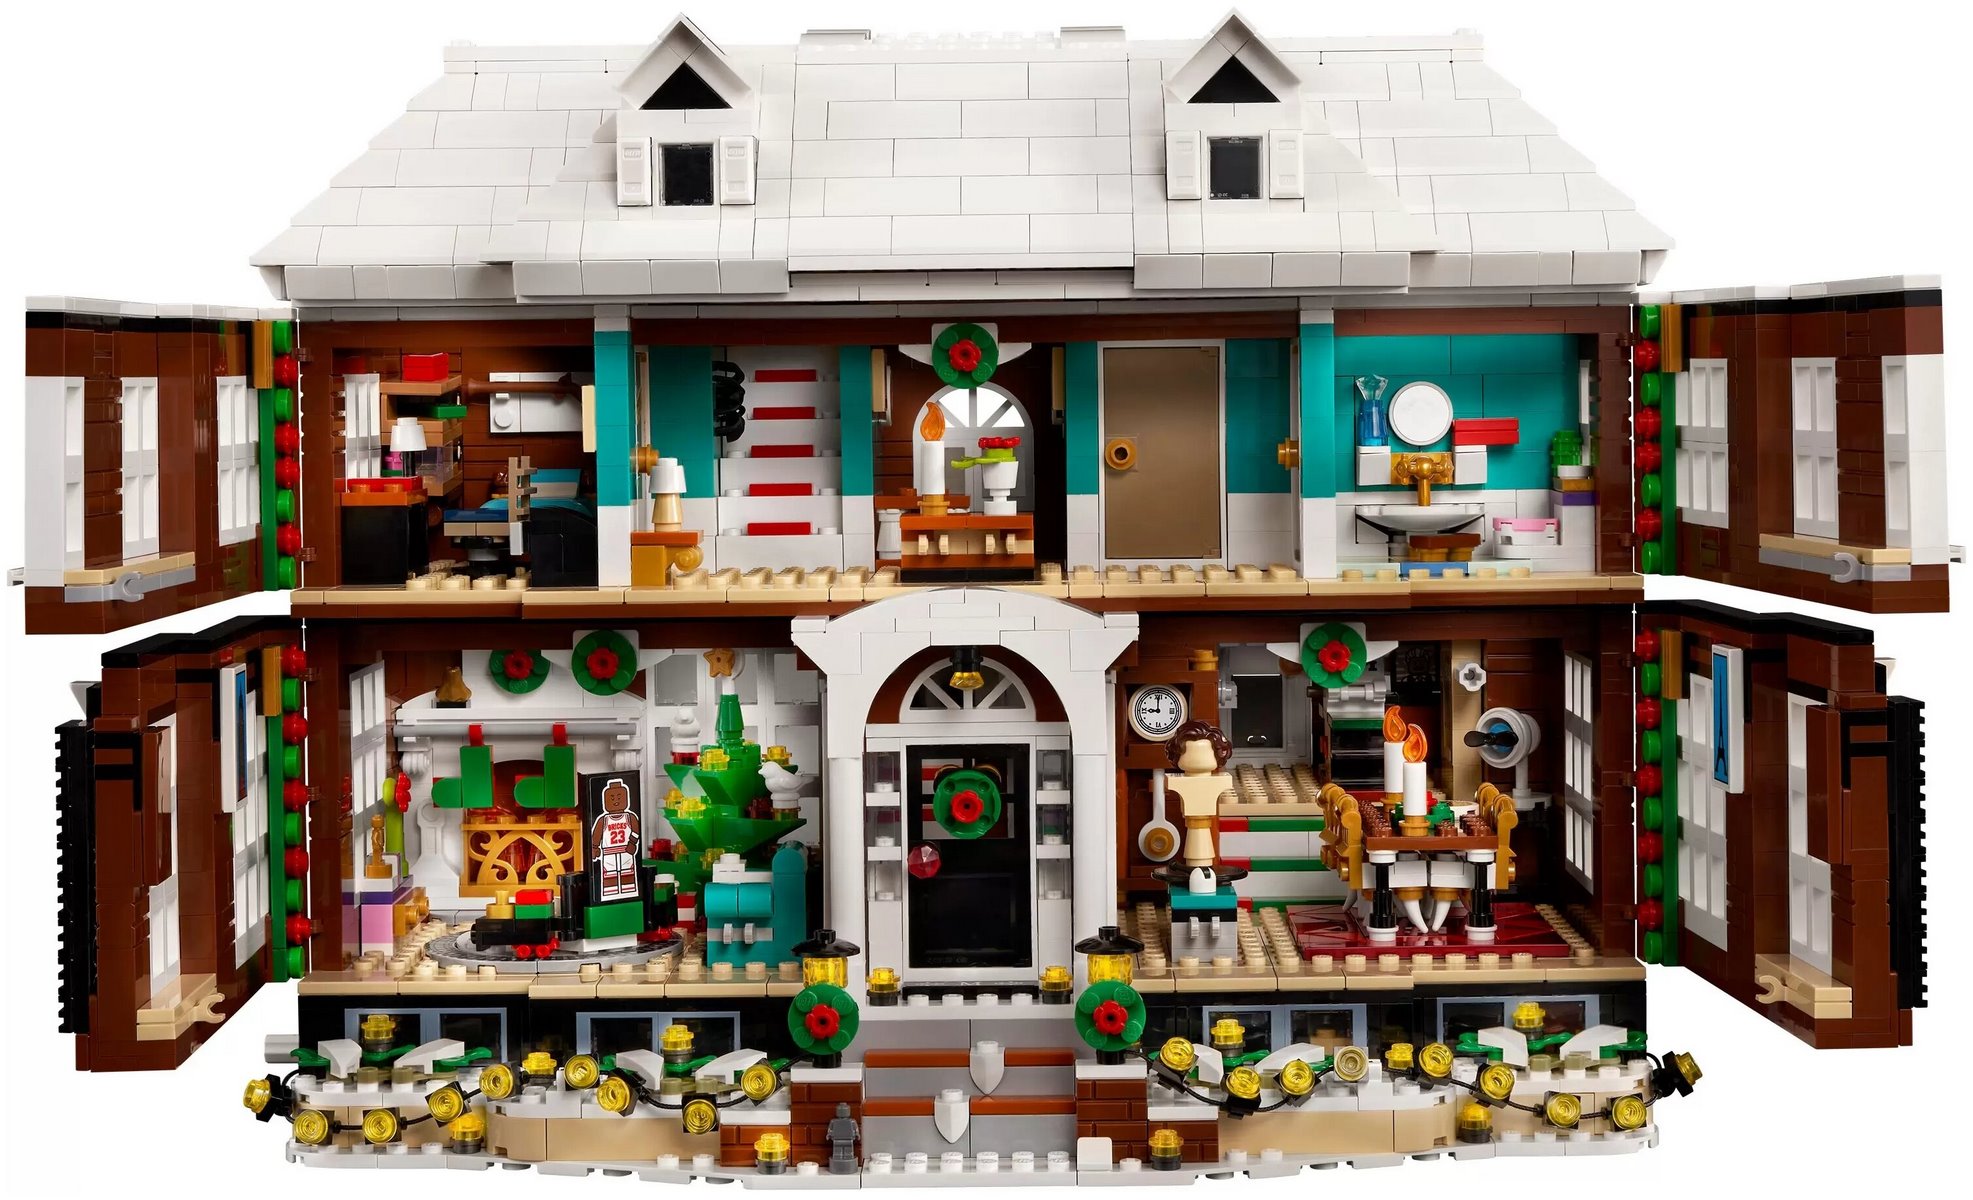 Как сделать из Лего машину, дом, робота? 6 секретов игры с Лего